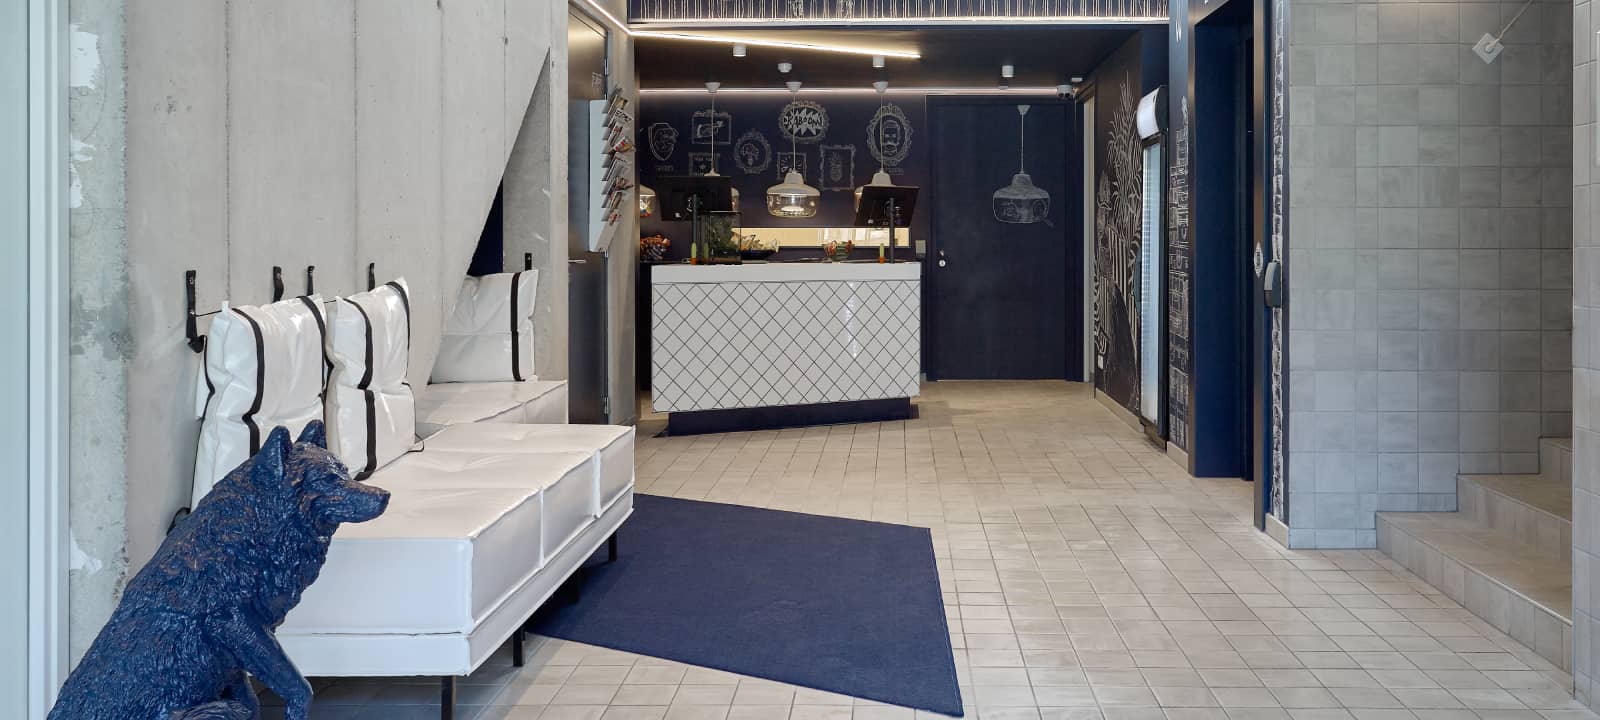 Lobby van Hotel Kaboom met blauw hondenfiguur, witte banken en receptie | Kaboom Hotel